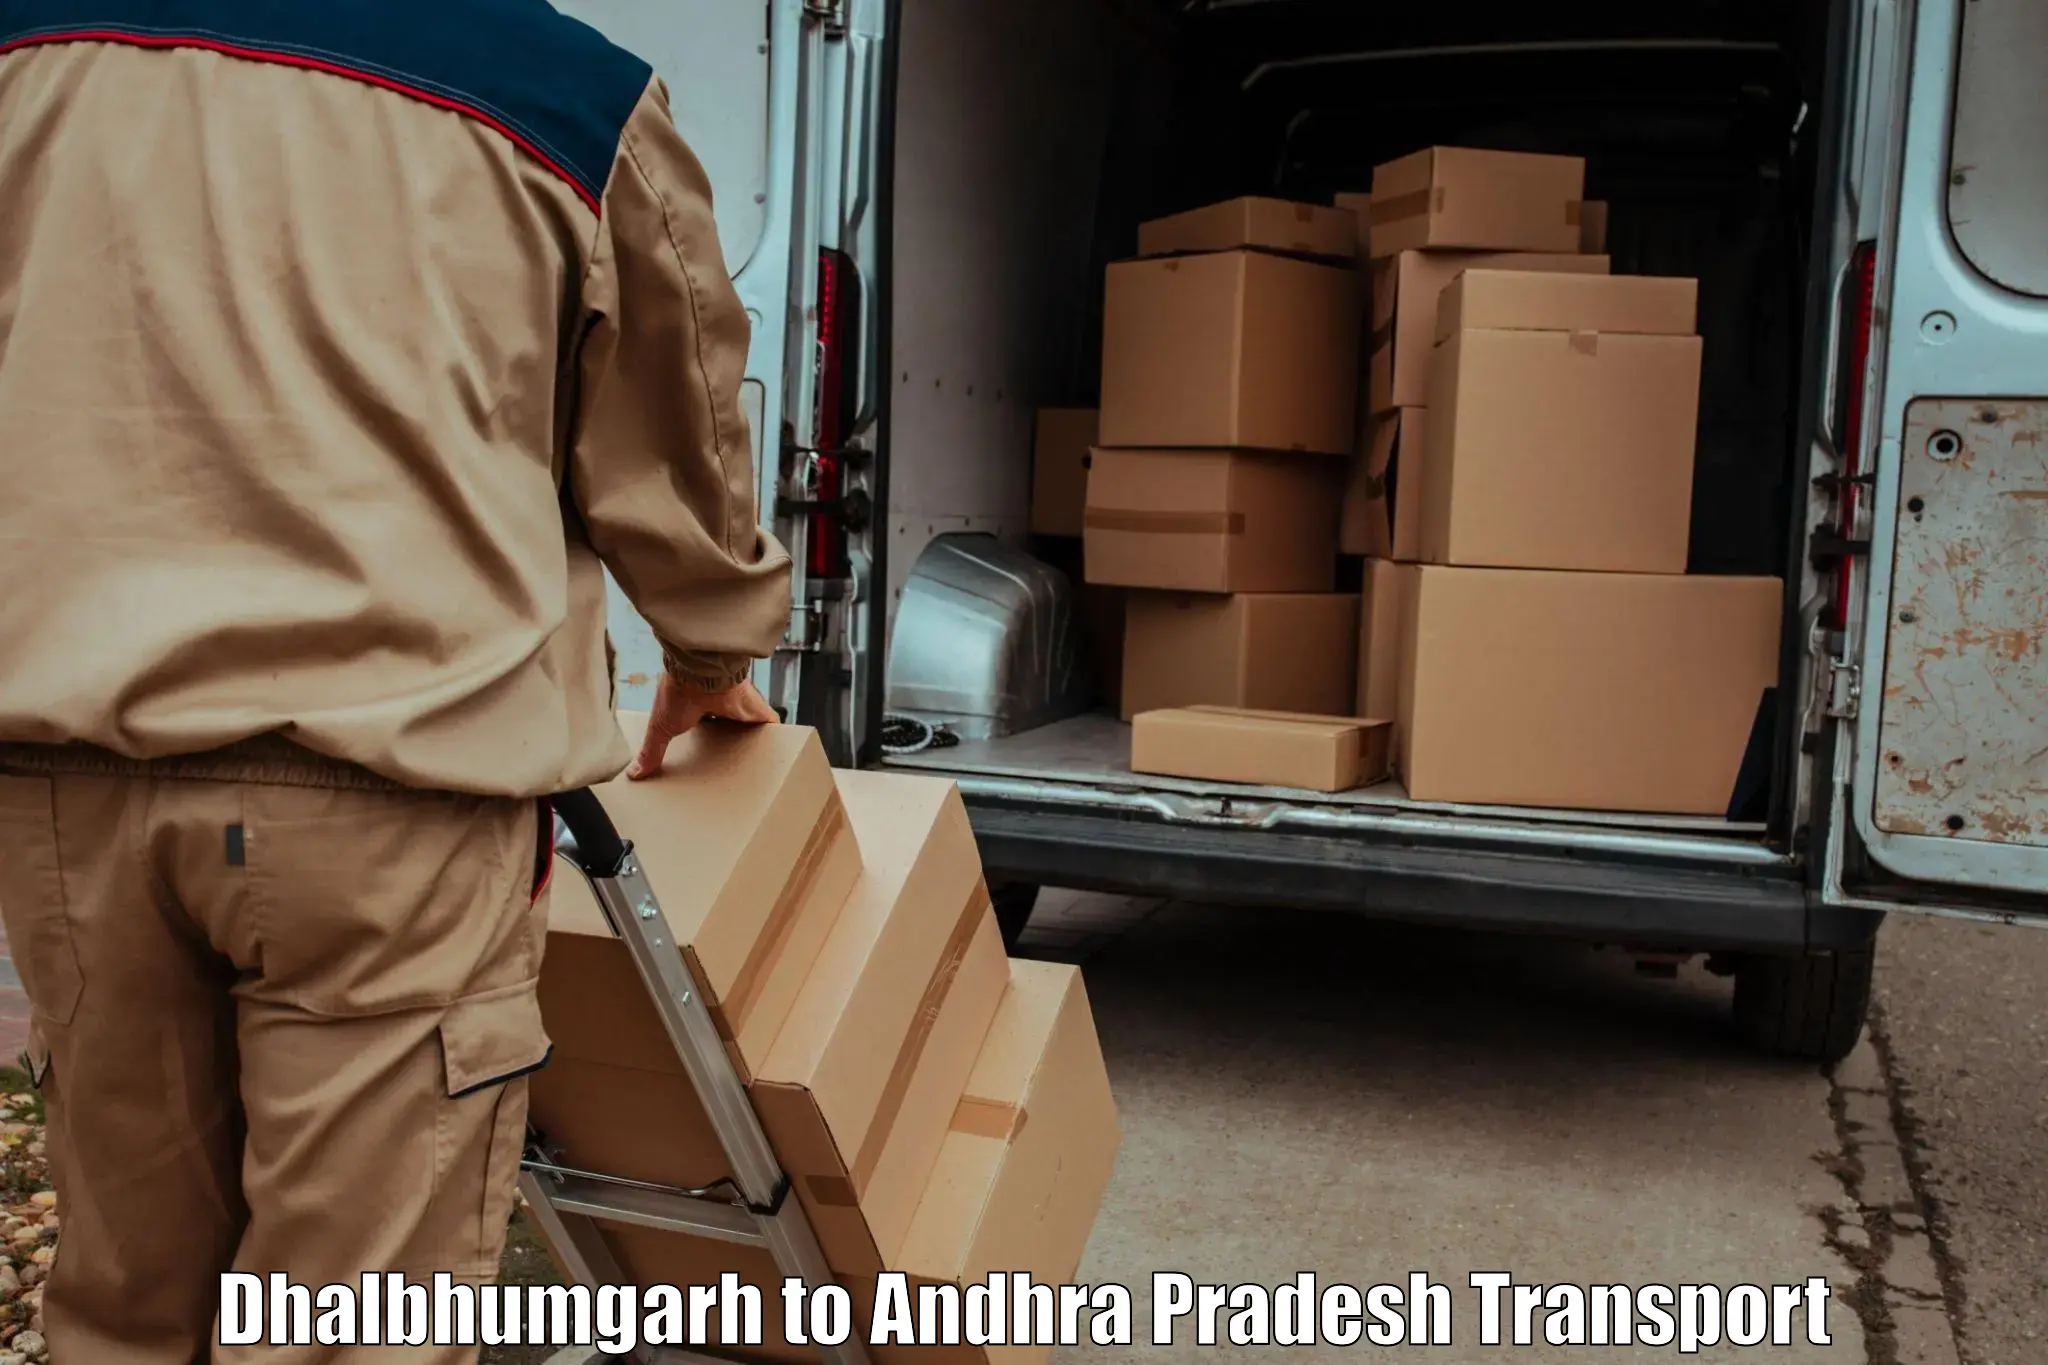 Bike shipping service in Dhalbhumgarh to Venkatagiri